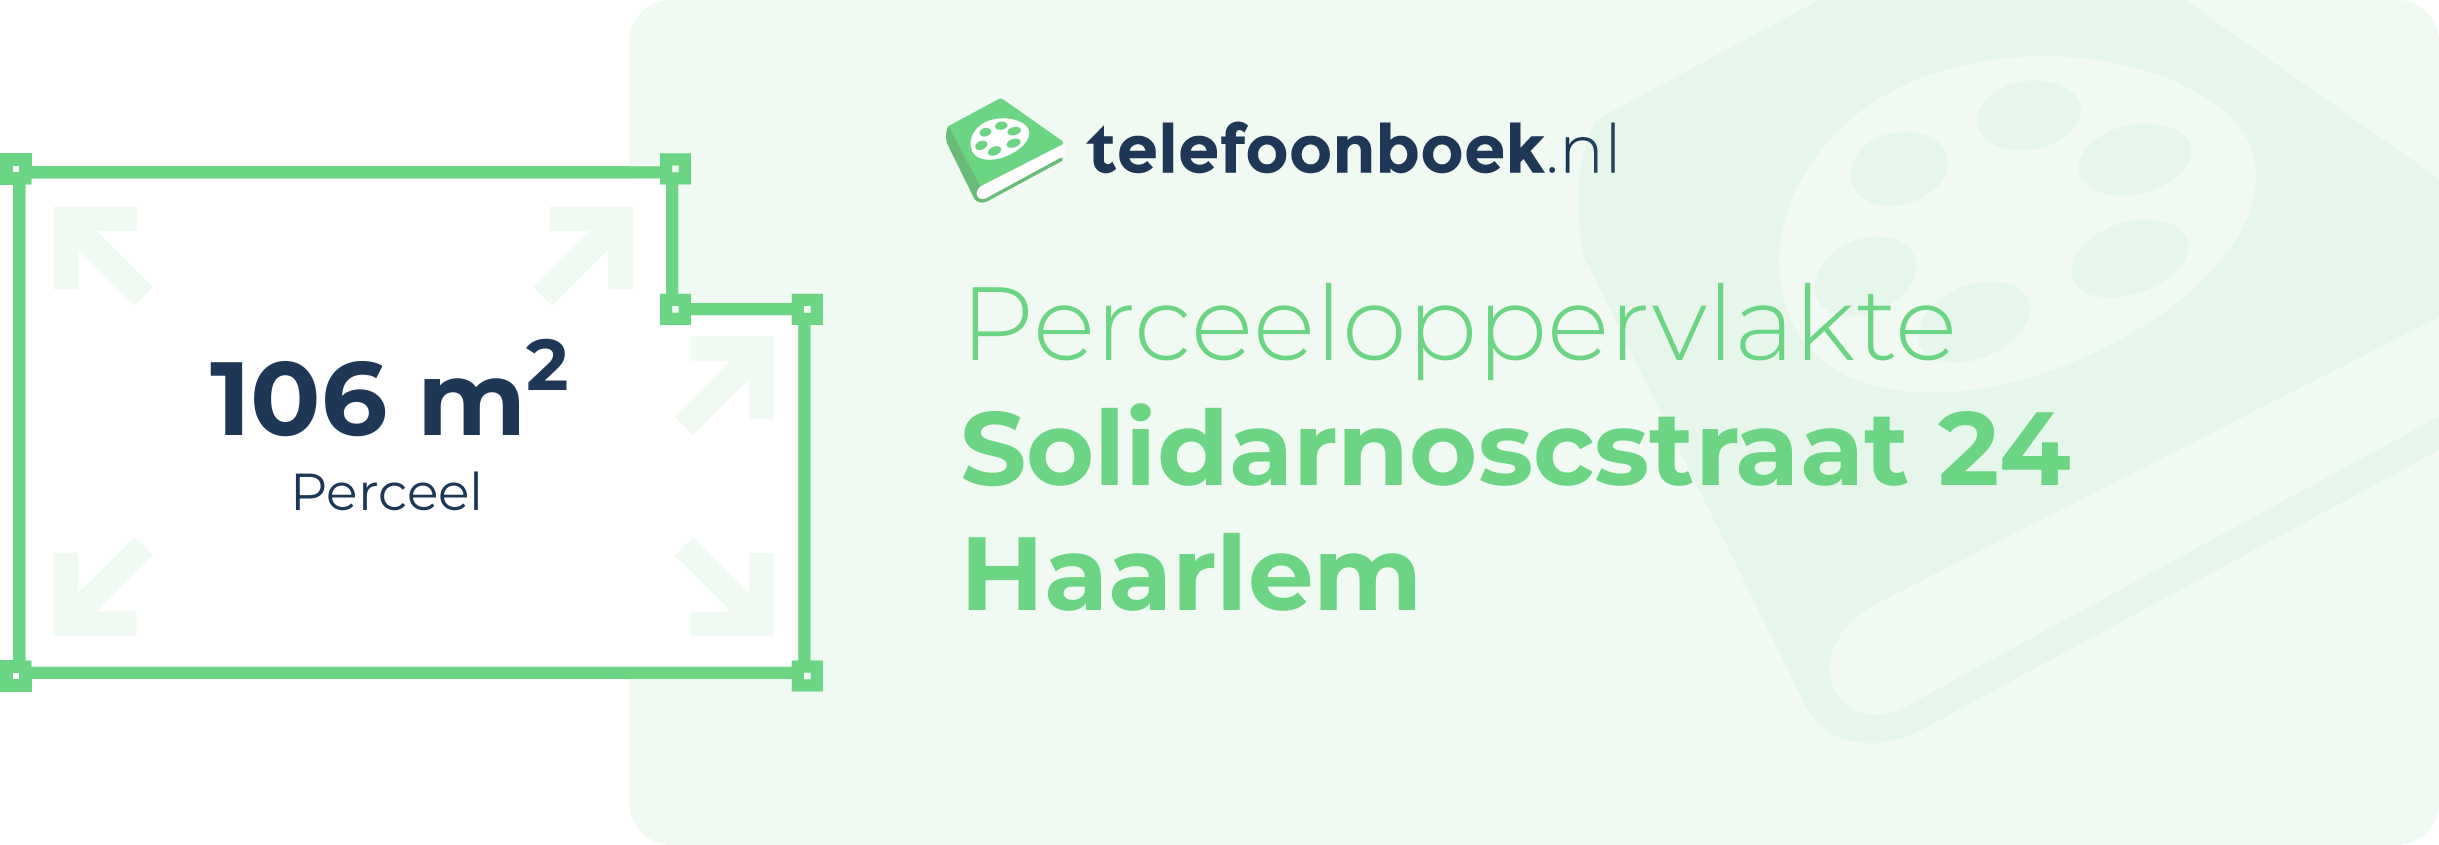 Perceeloppervlakte Solidarnoscstraat 24 Haarlem